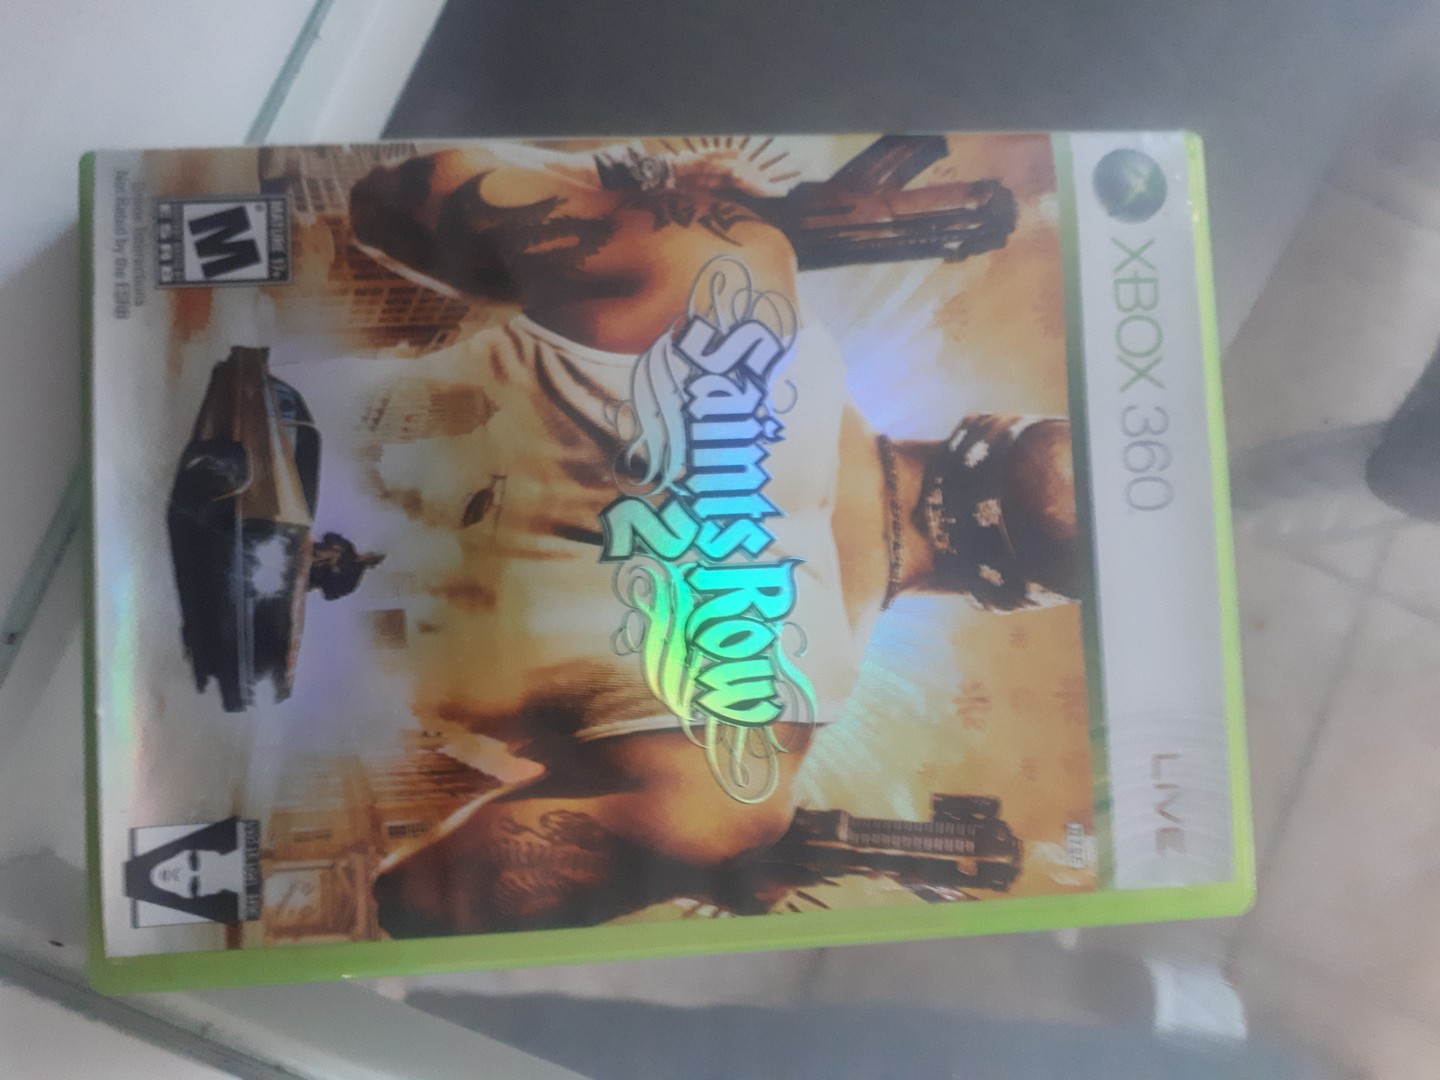 consolas y videojuegos - Cintas de Xbox360 Originales 